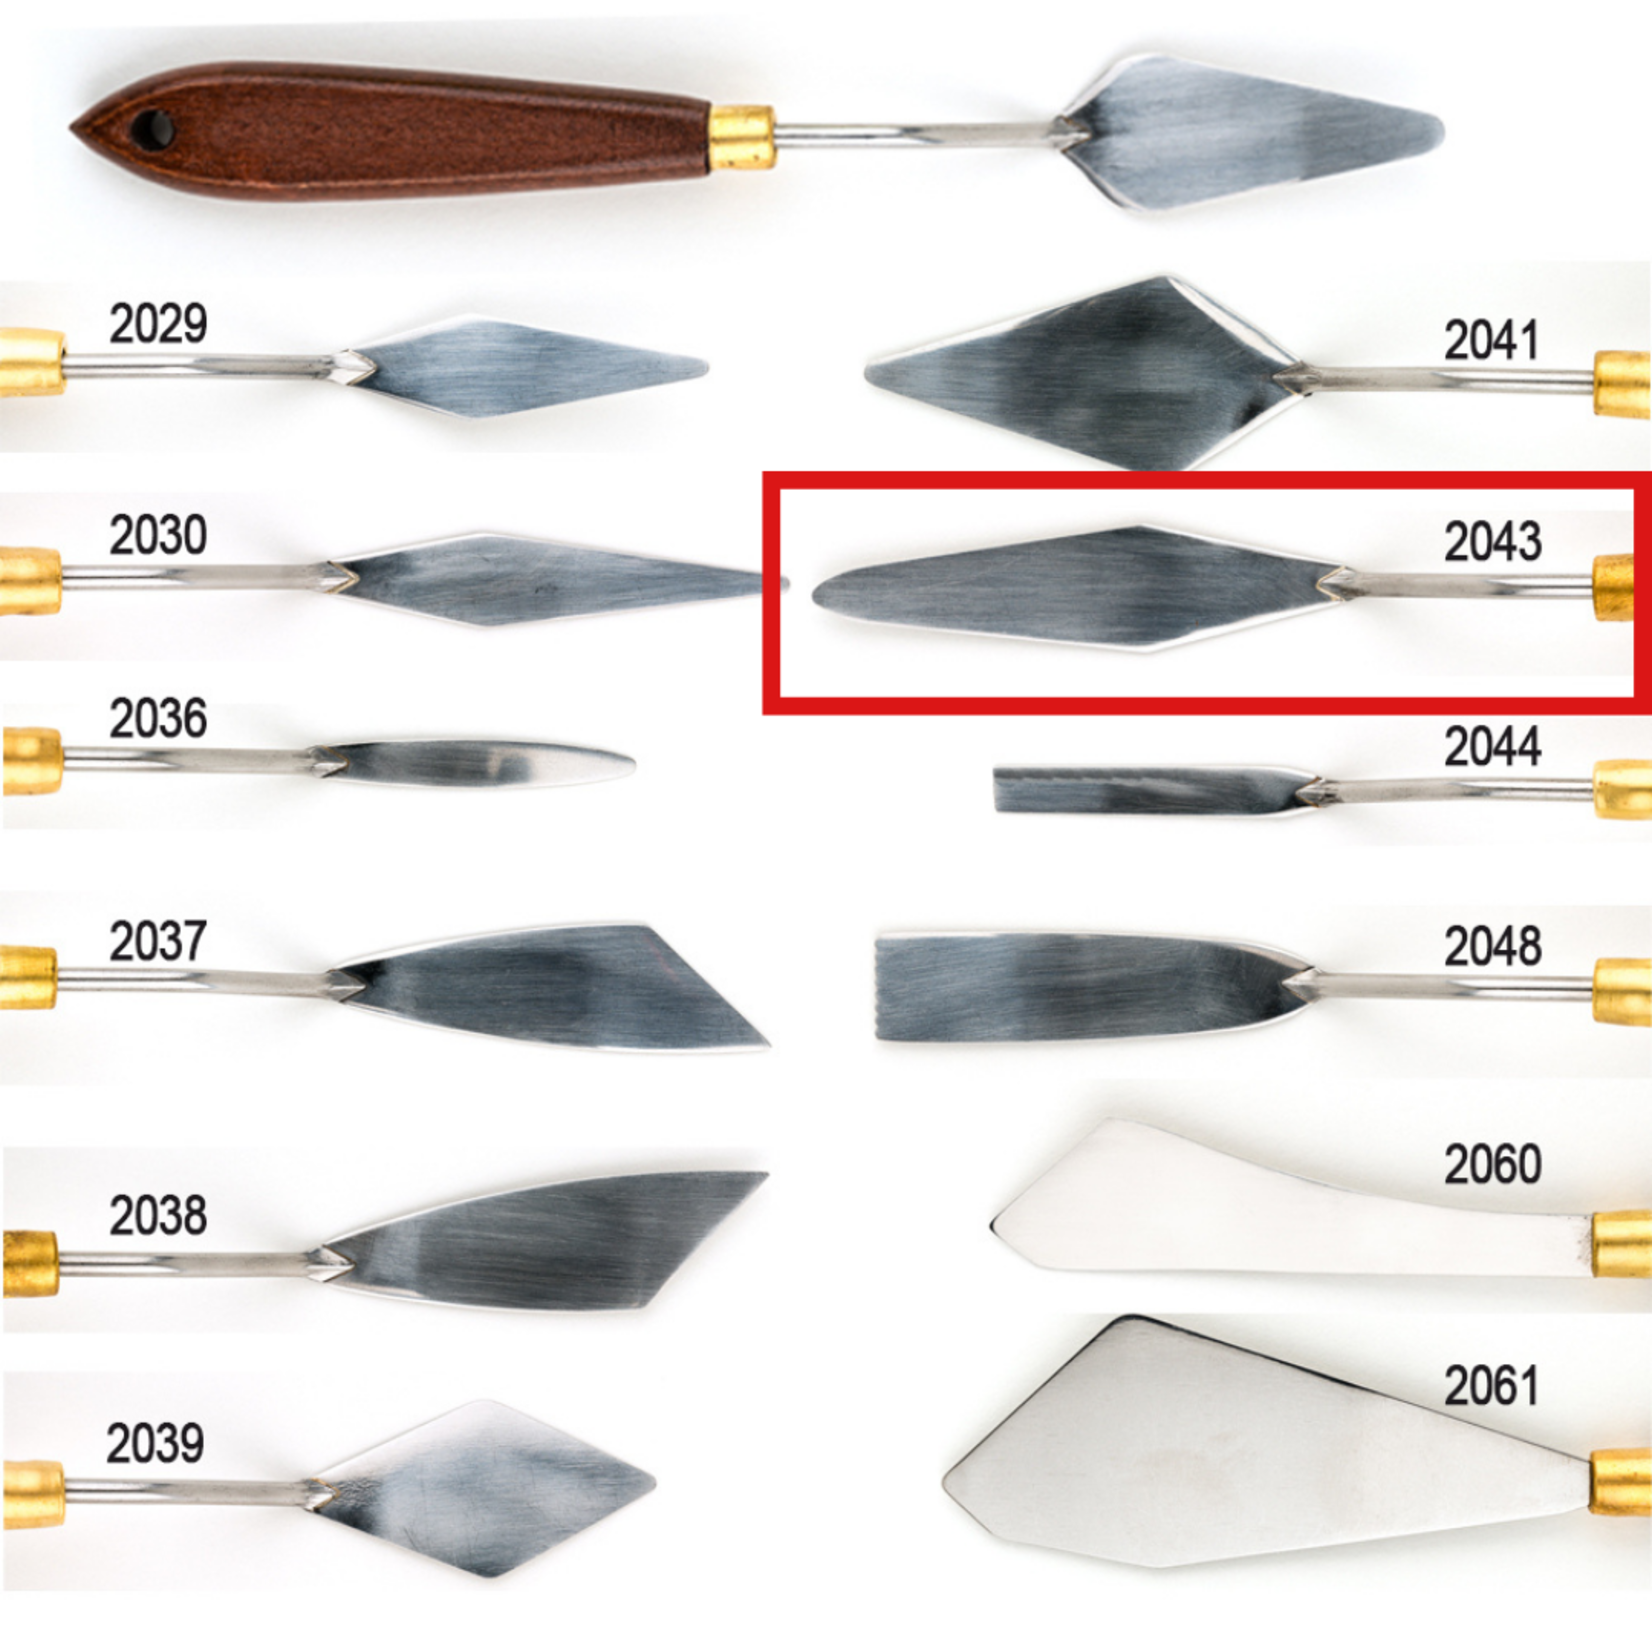 DEMCO DEMCO ART PRO PALETTE KNIFE 2043